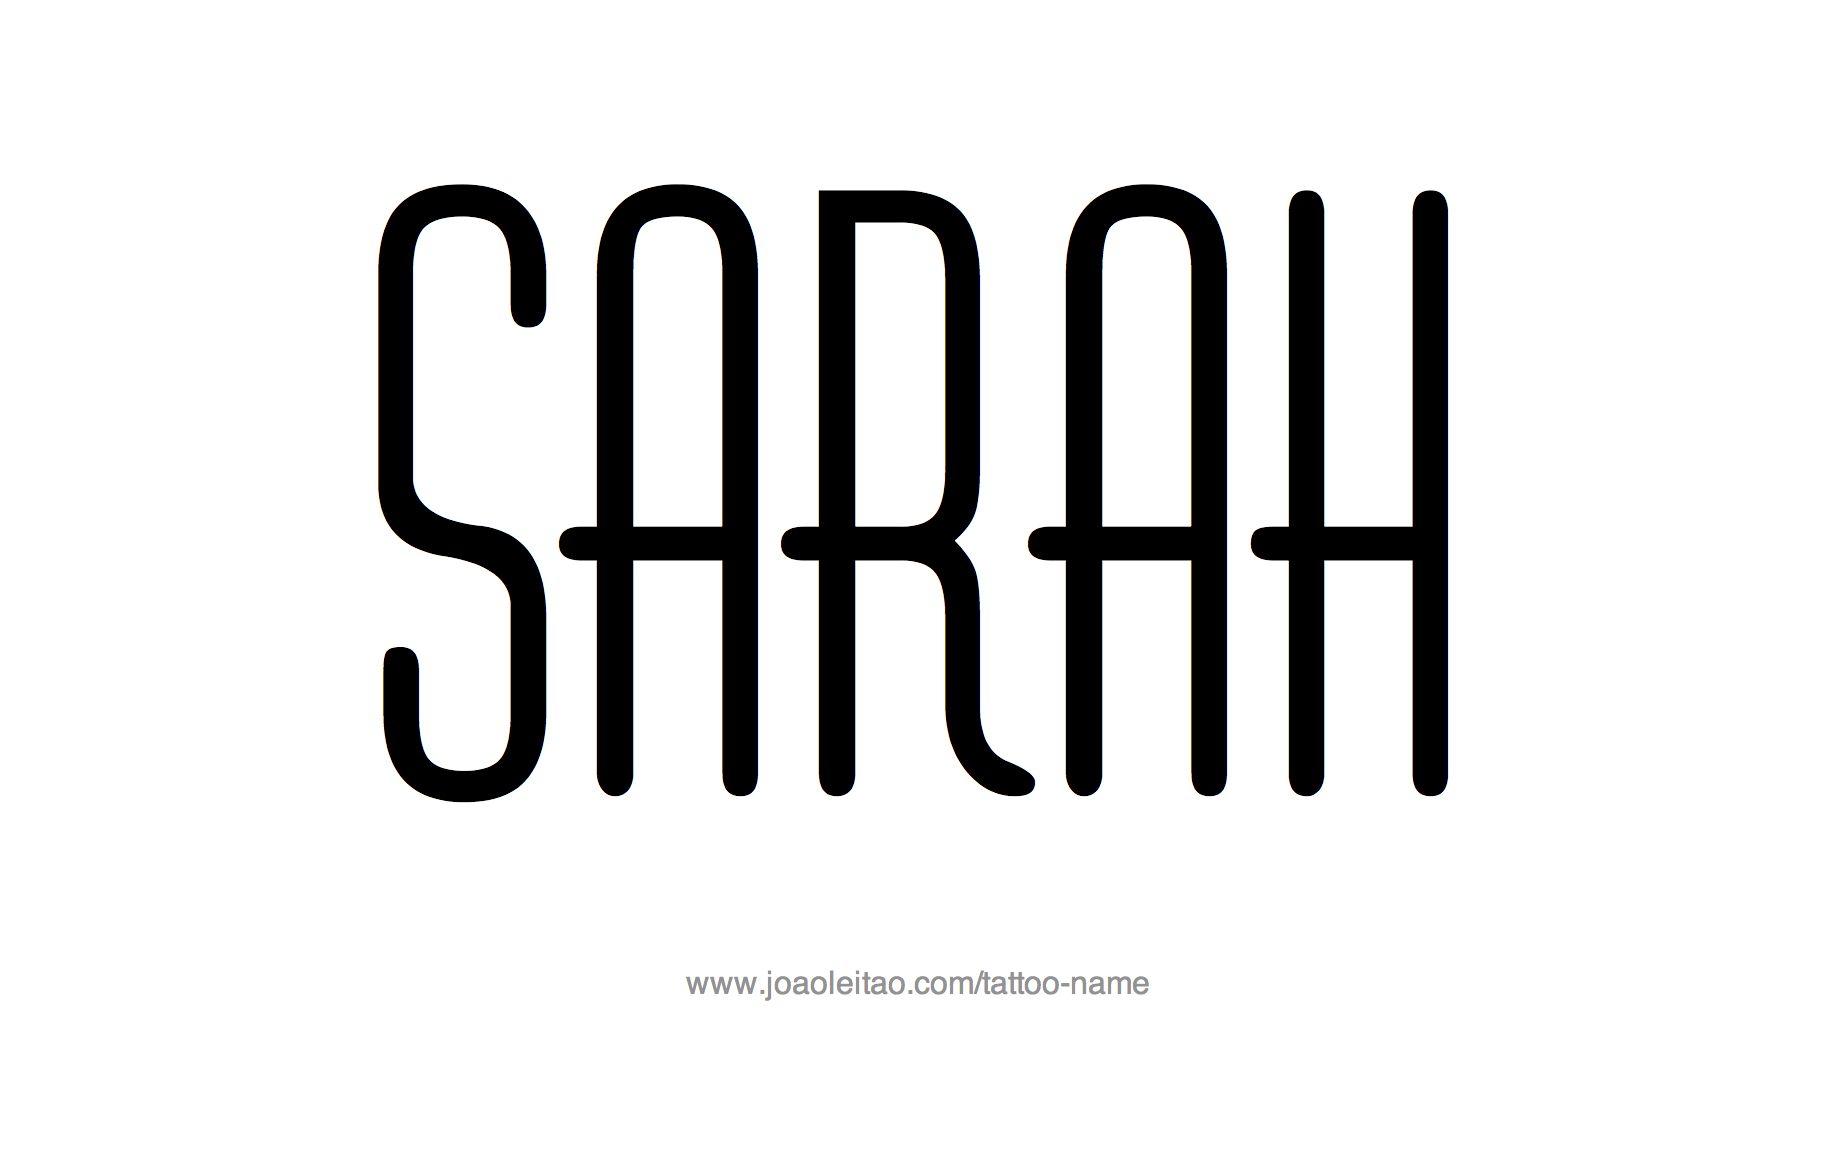 Tattoo Design Name Sarah 